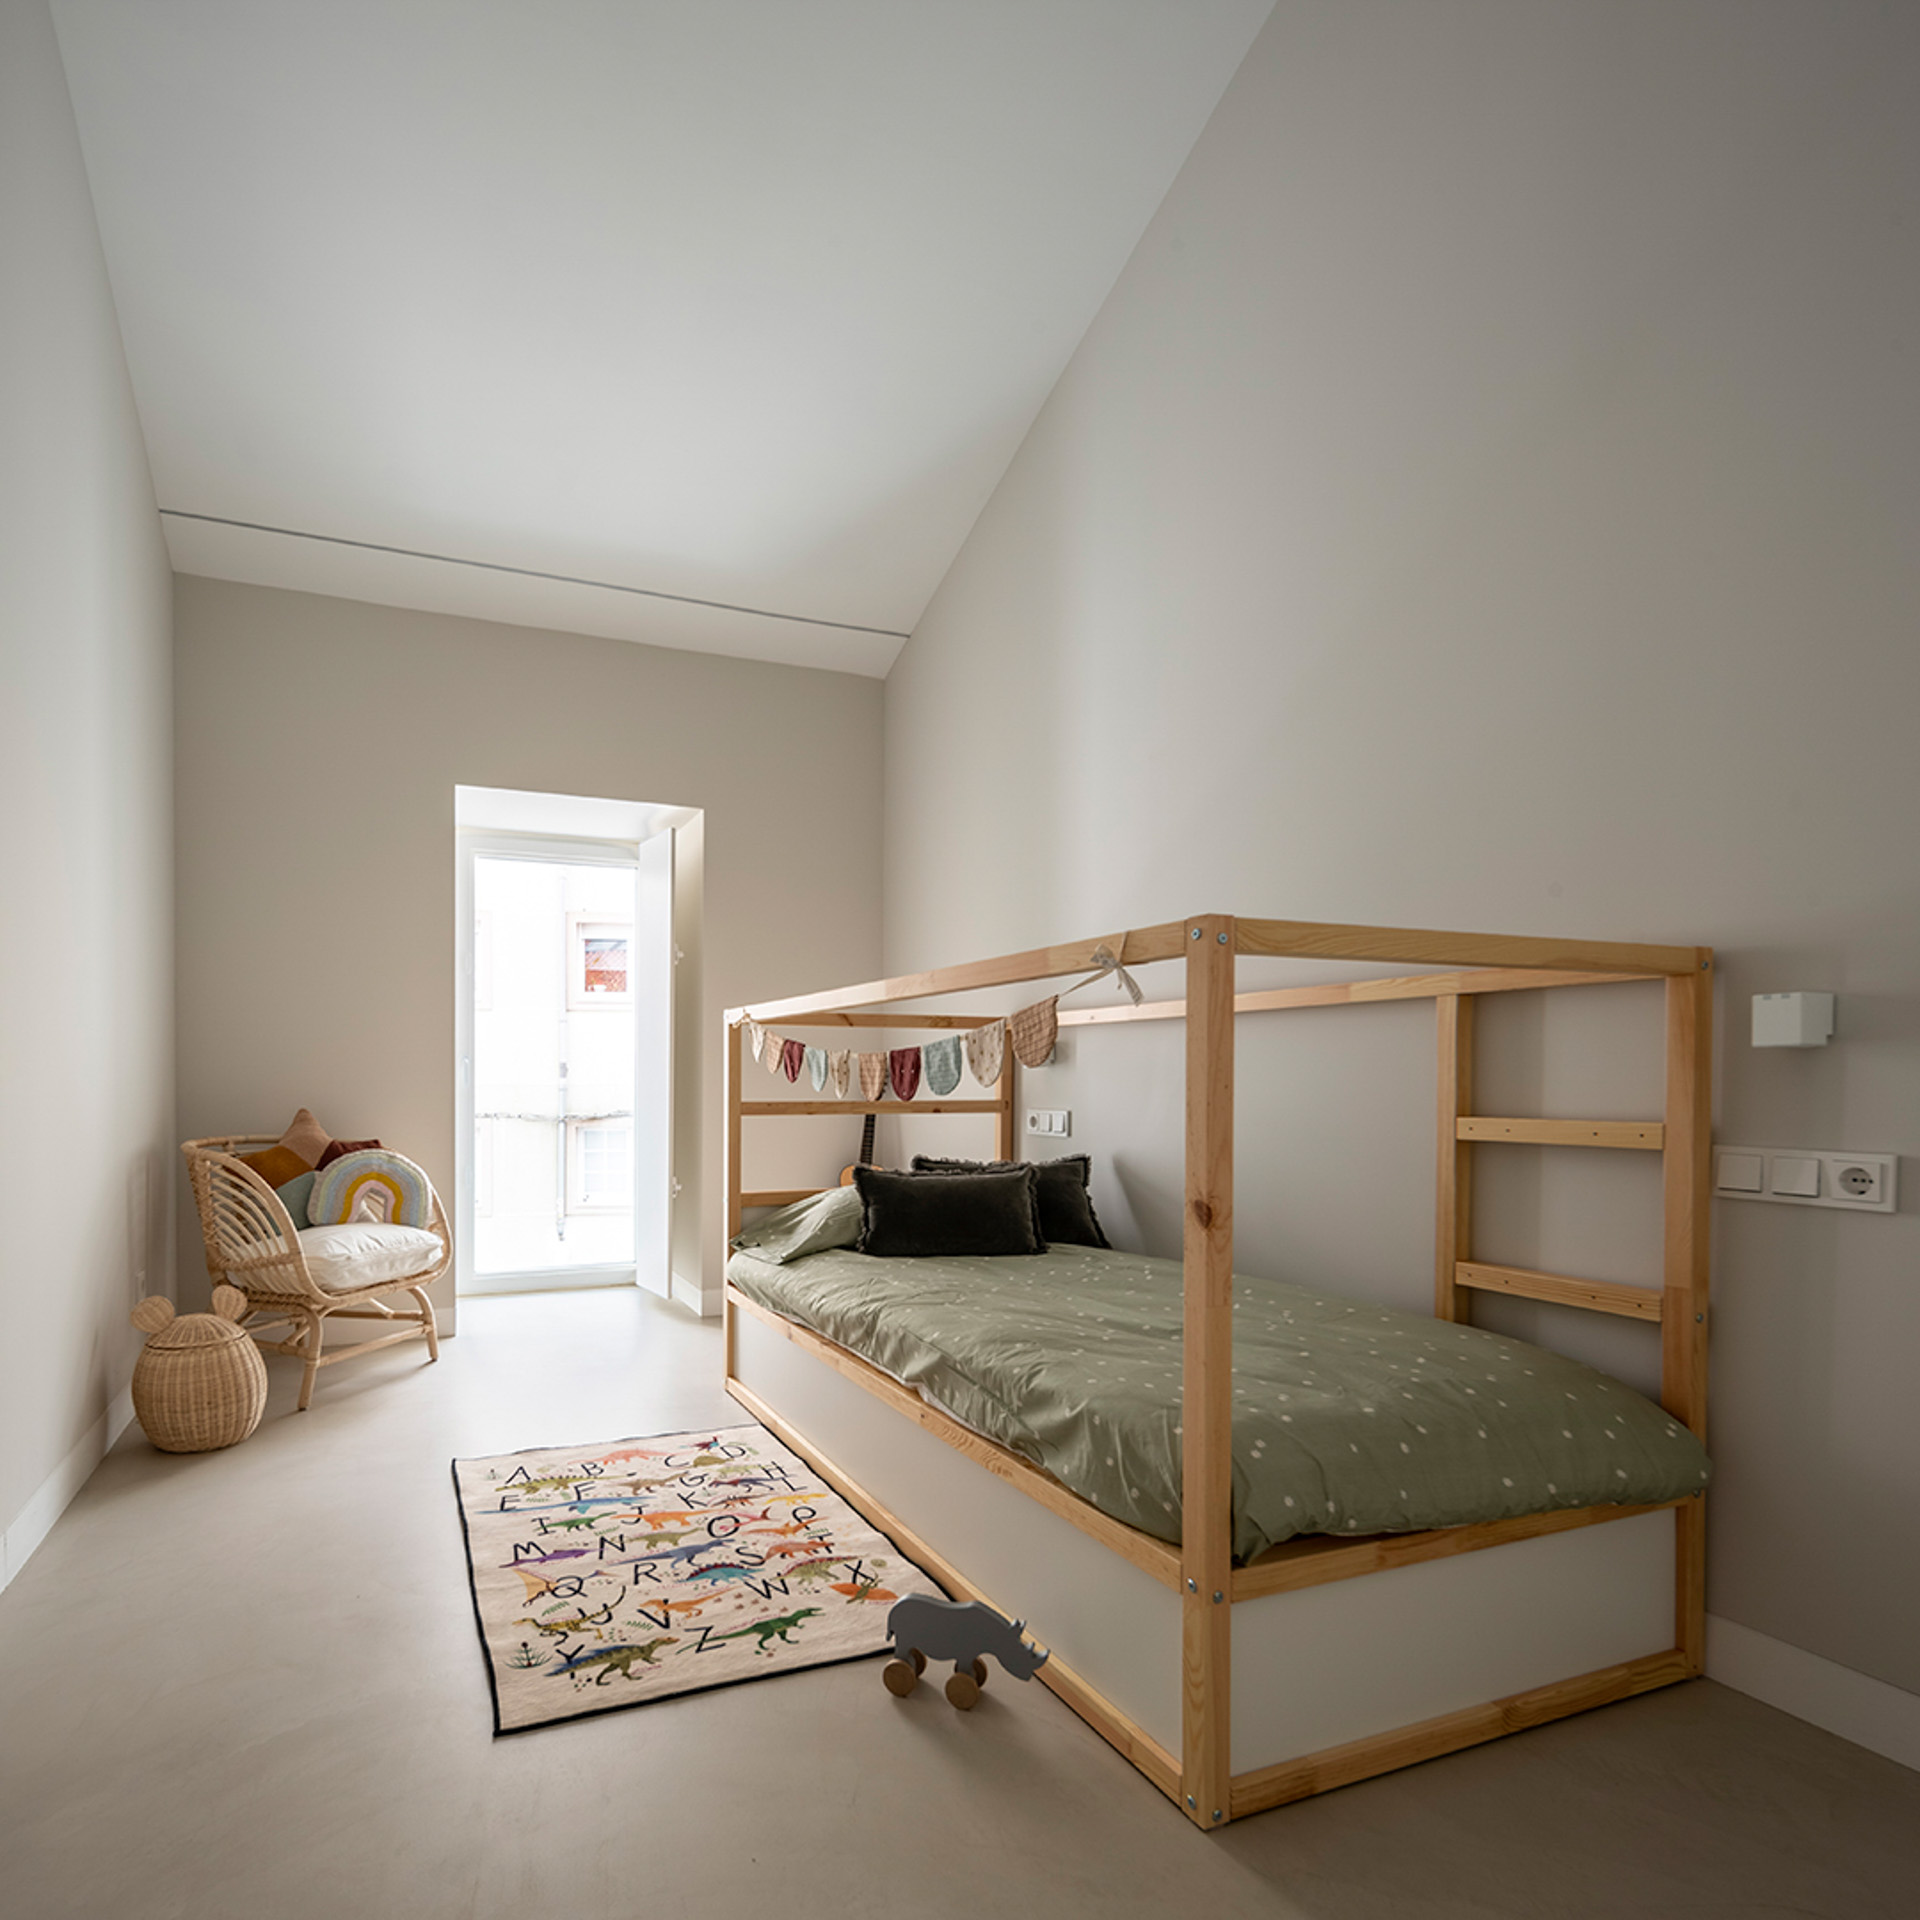 Dormitorio juvenil gris blanco y madera